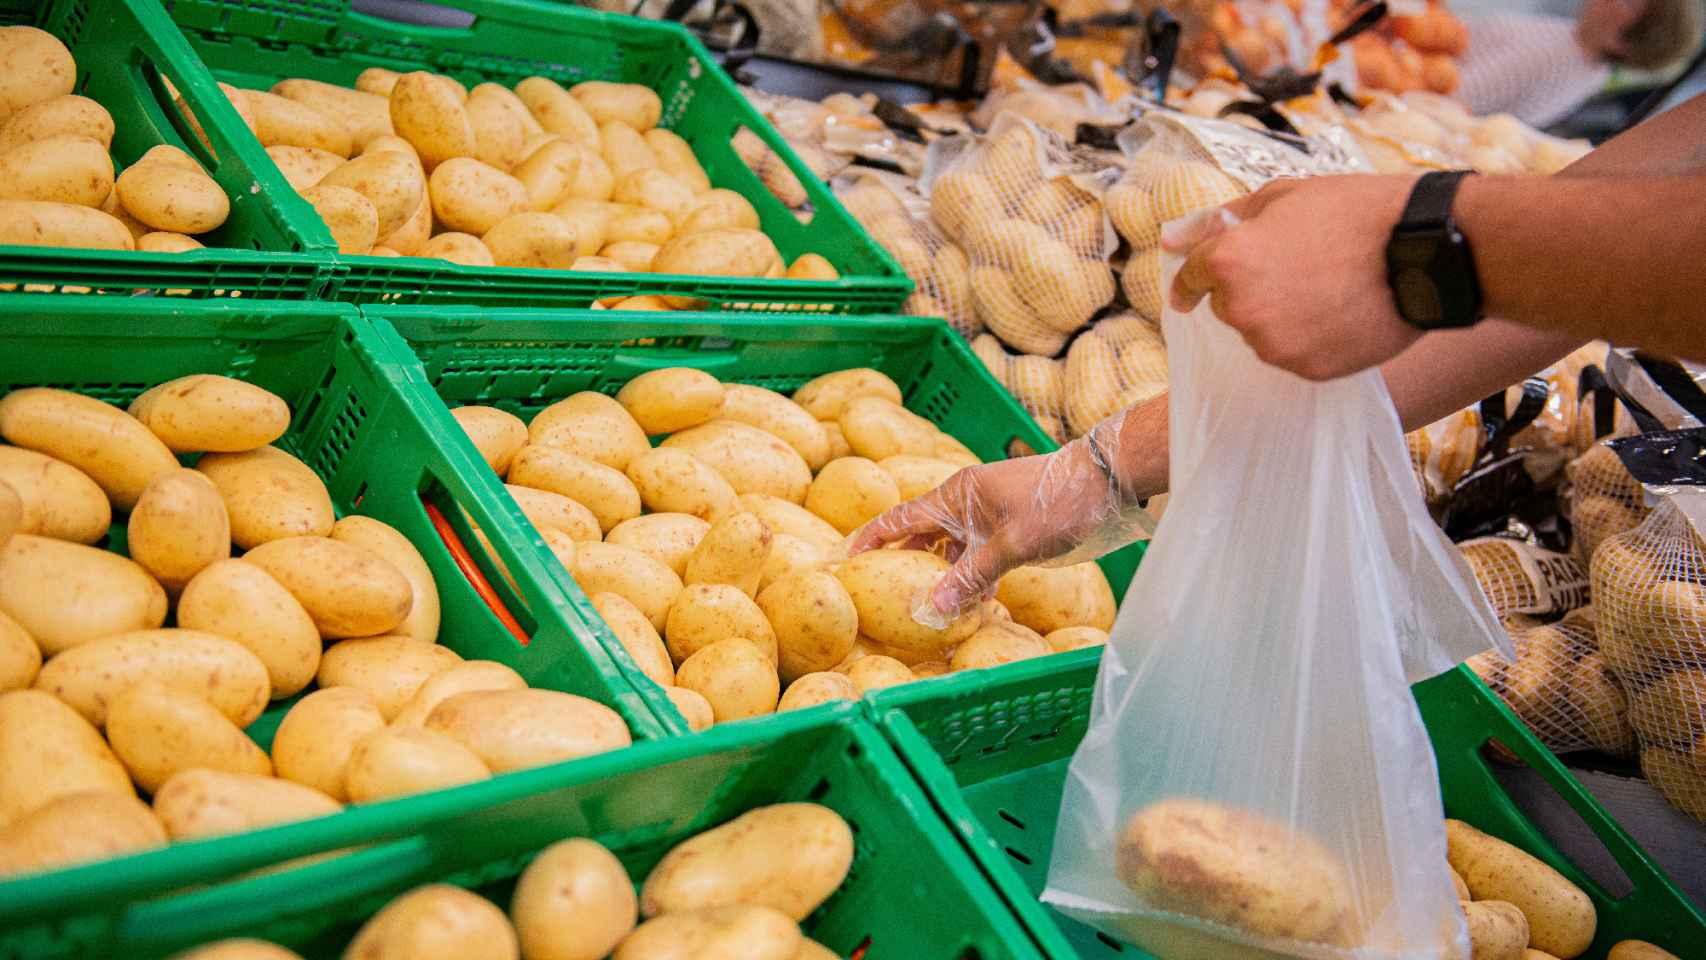 Imagen de la zona de patatas en el supermercado